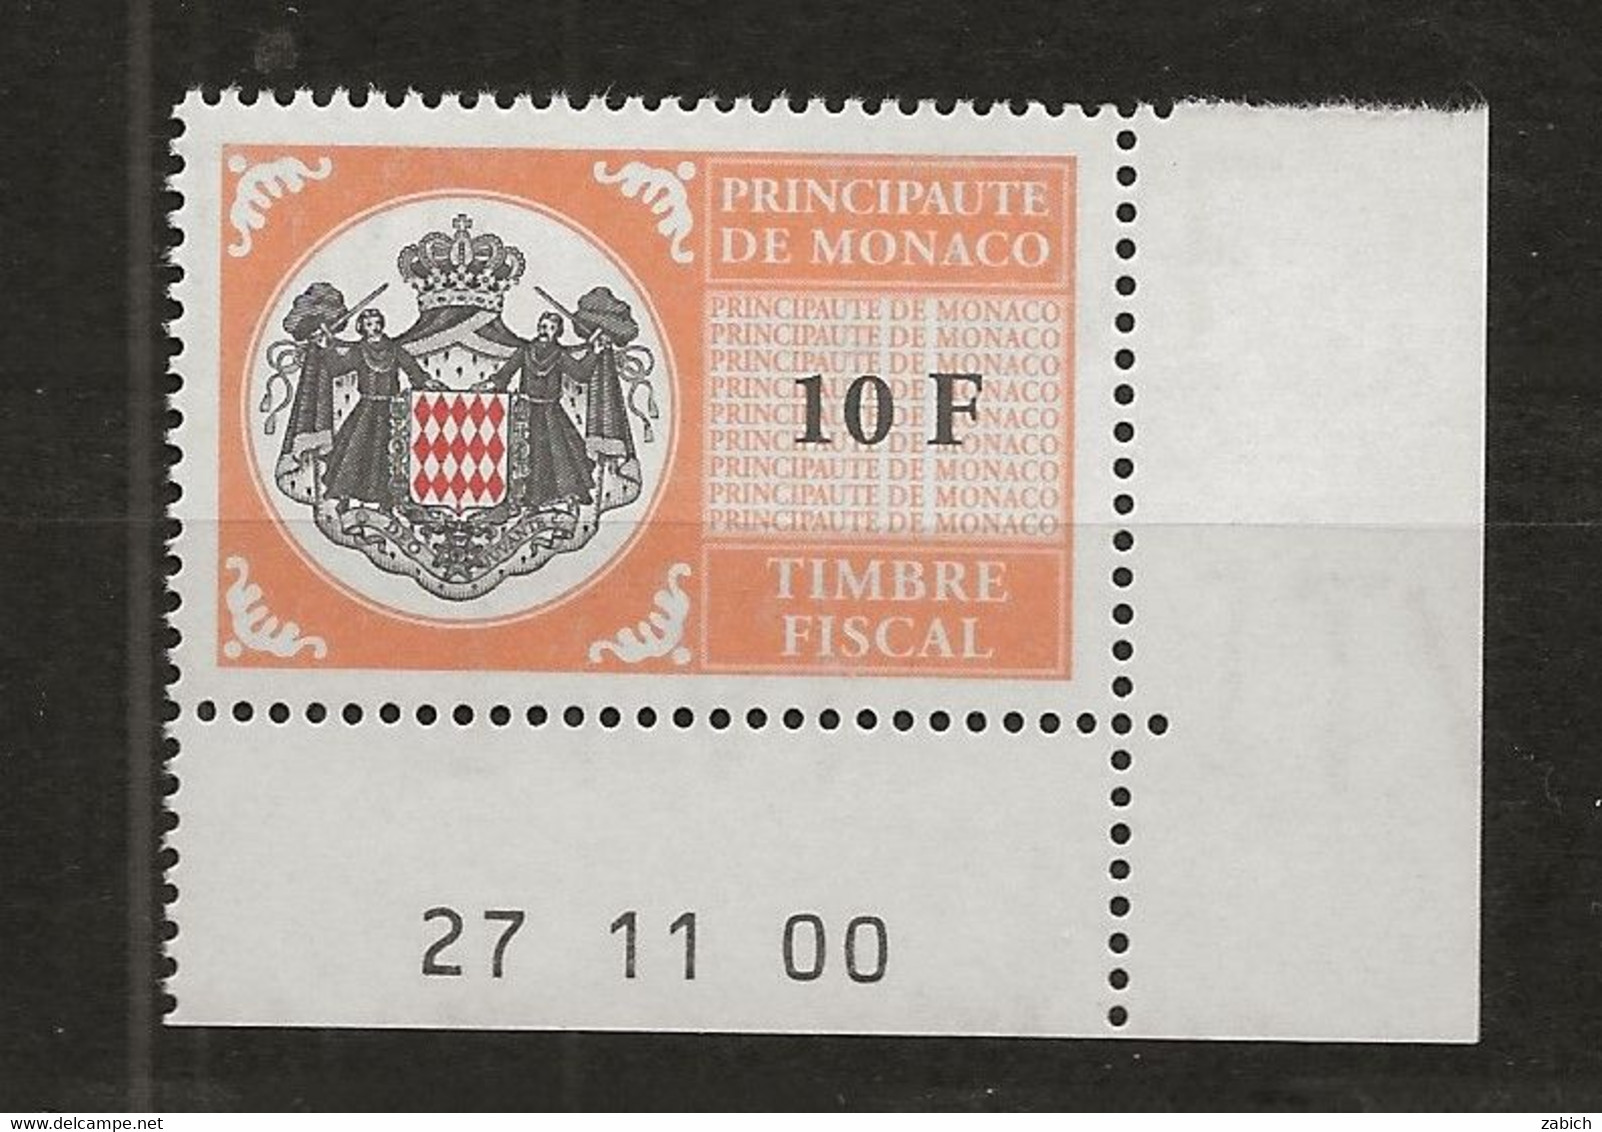 TIMBRES FISCAUX DE MONACO SERIE UNIFIEE N°102 10F Orange  Coin Daté Du 27 11 00 Neuf Gomme Mnh (**) - Revenue